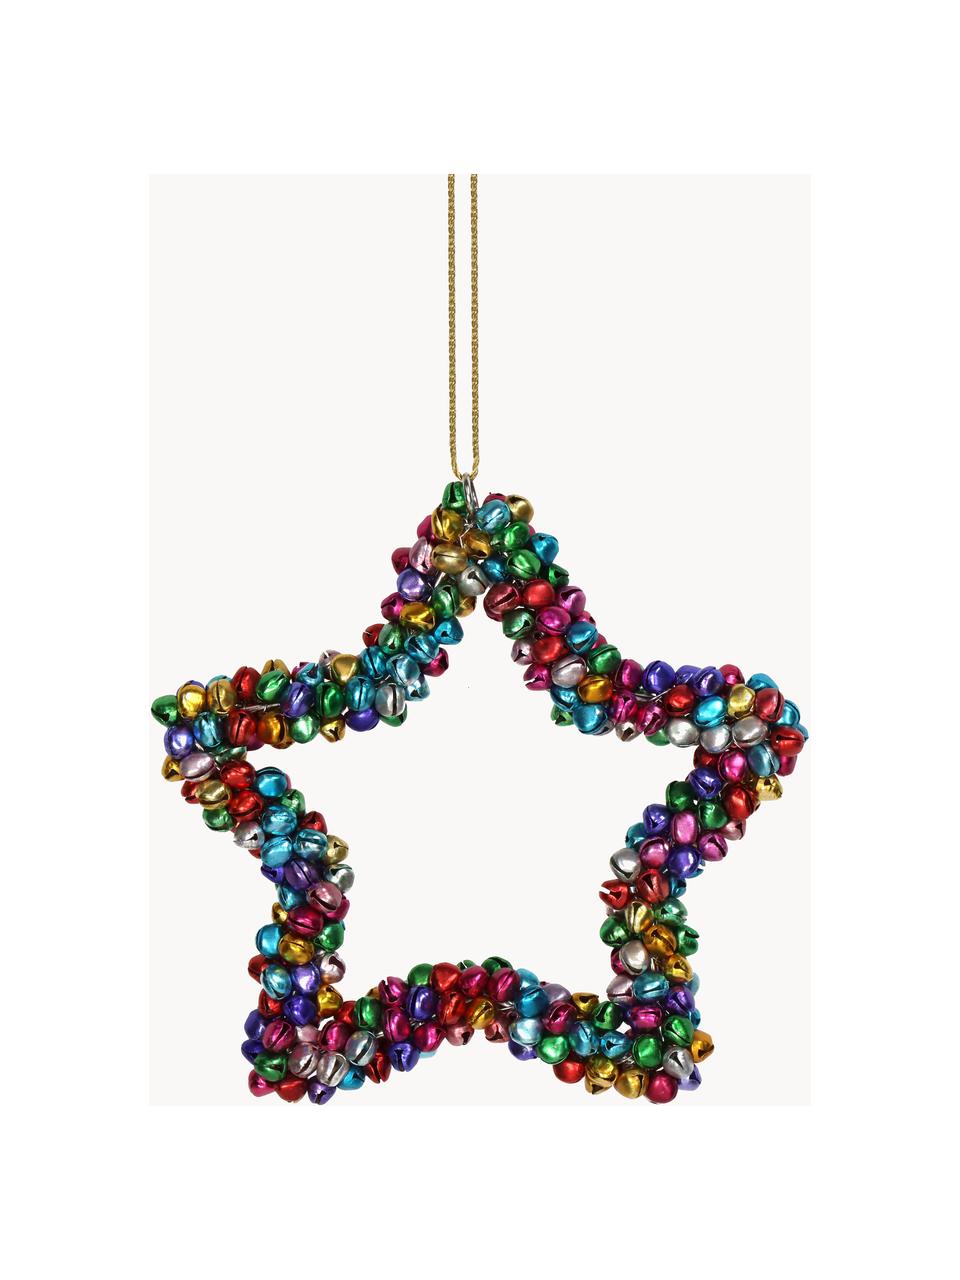 Baumanhänger Star mit Glöckchen, Metall, beschichtet, Bunt, B 14 x H 14 cm